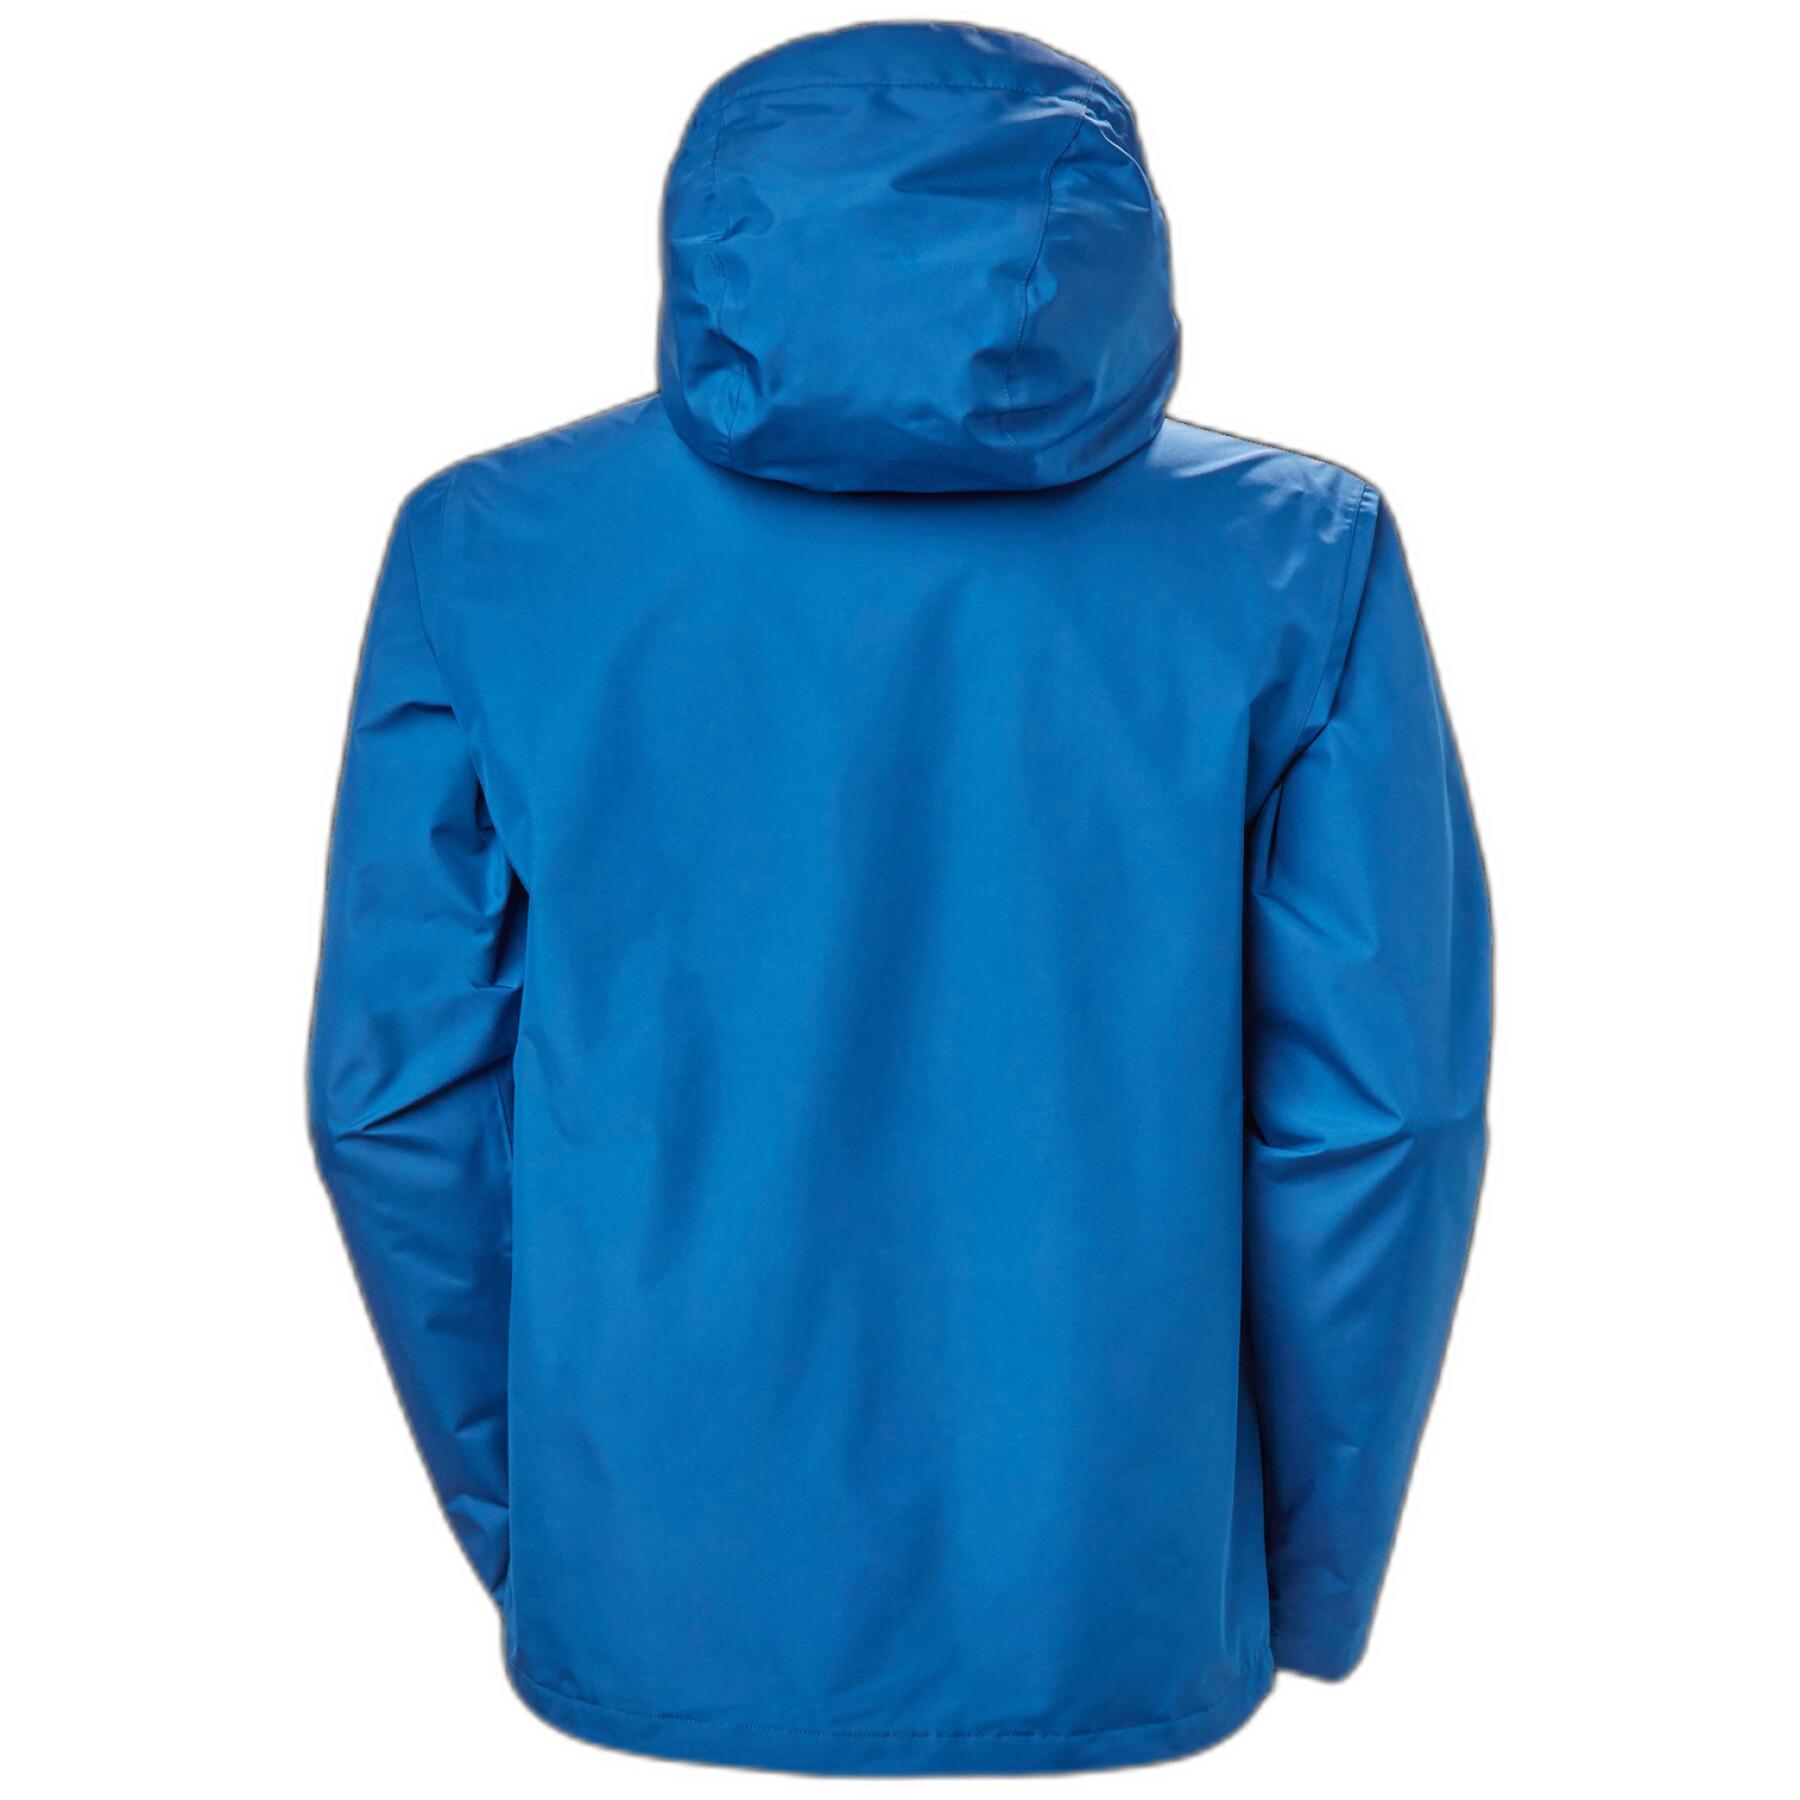 Waterproof jacket Helly Hansen Seven J